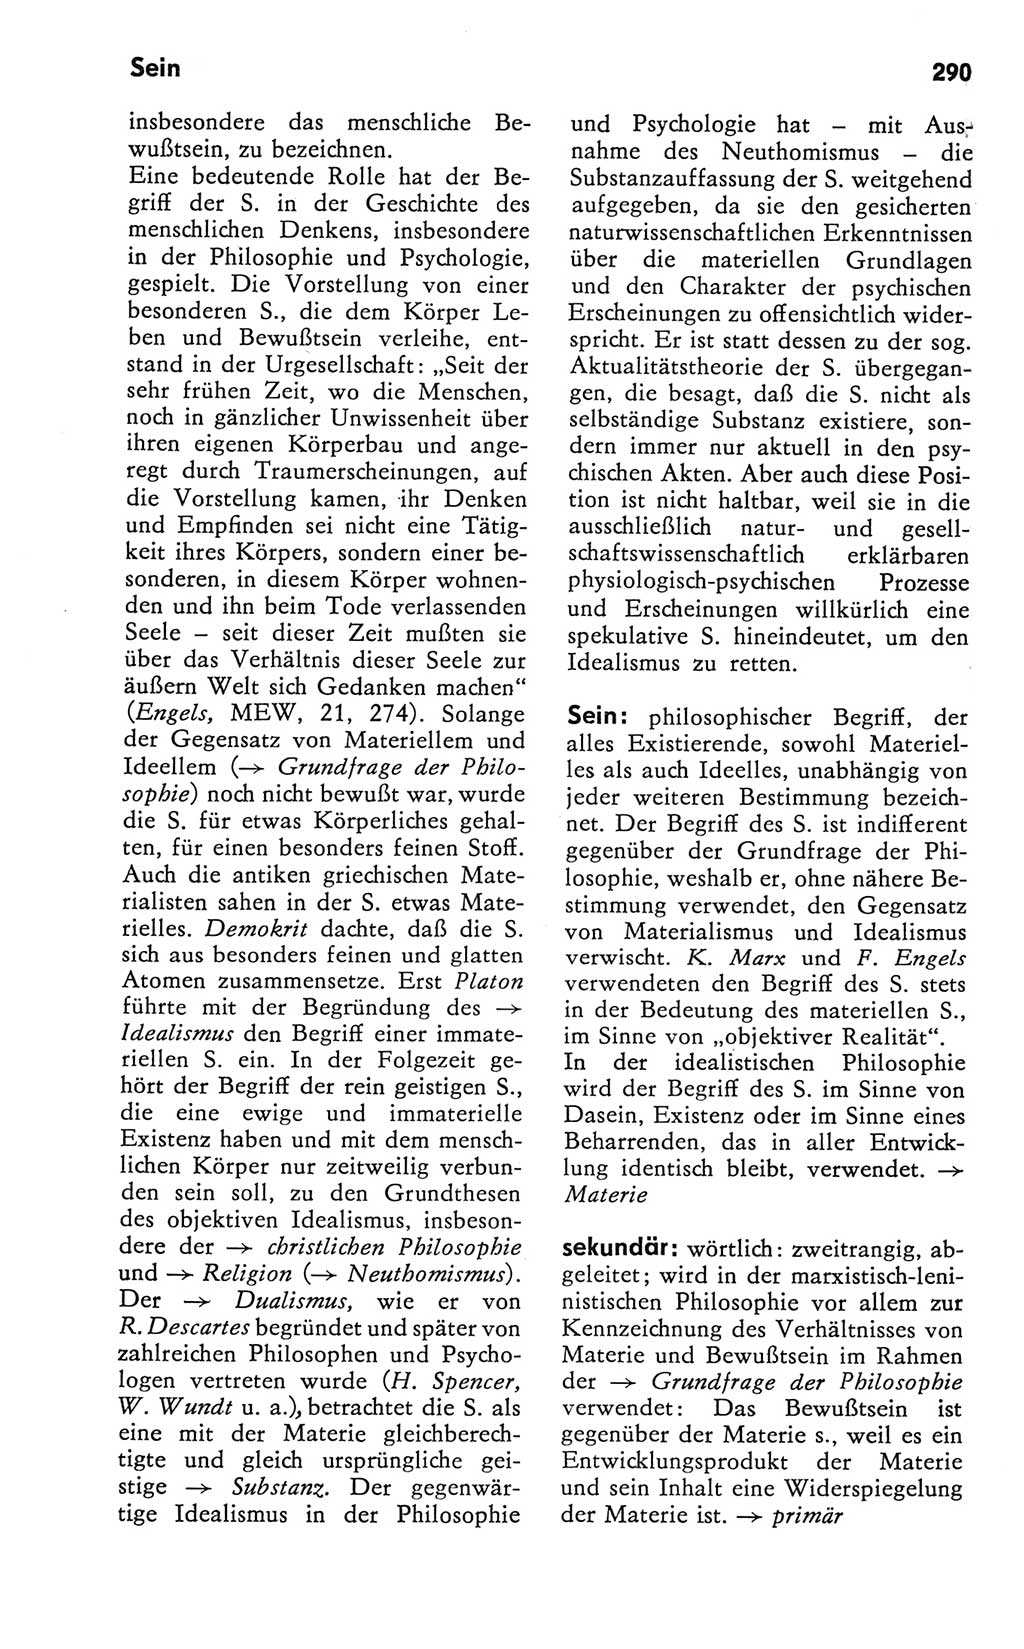 Kleines Wörterbuch der marxistisch-leninistischen Philosophie [Deutsche Demokratische Republik (DDR)] 1981, Seite 290 (Kl. Wb. ML Phil. DDR 1981, S. 290)